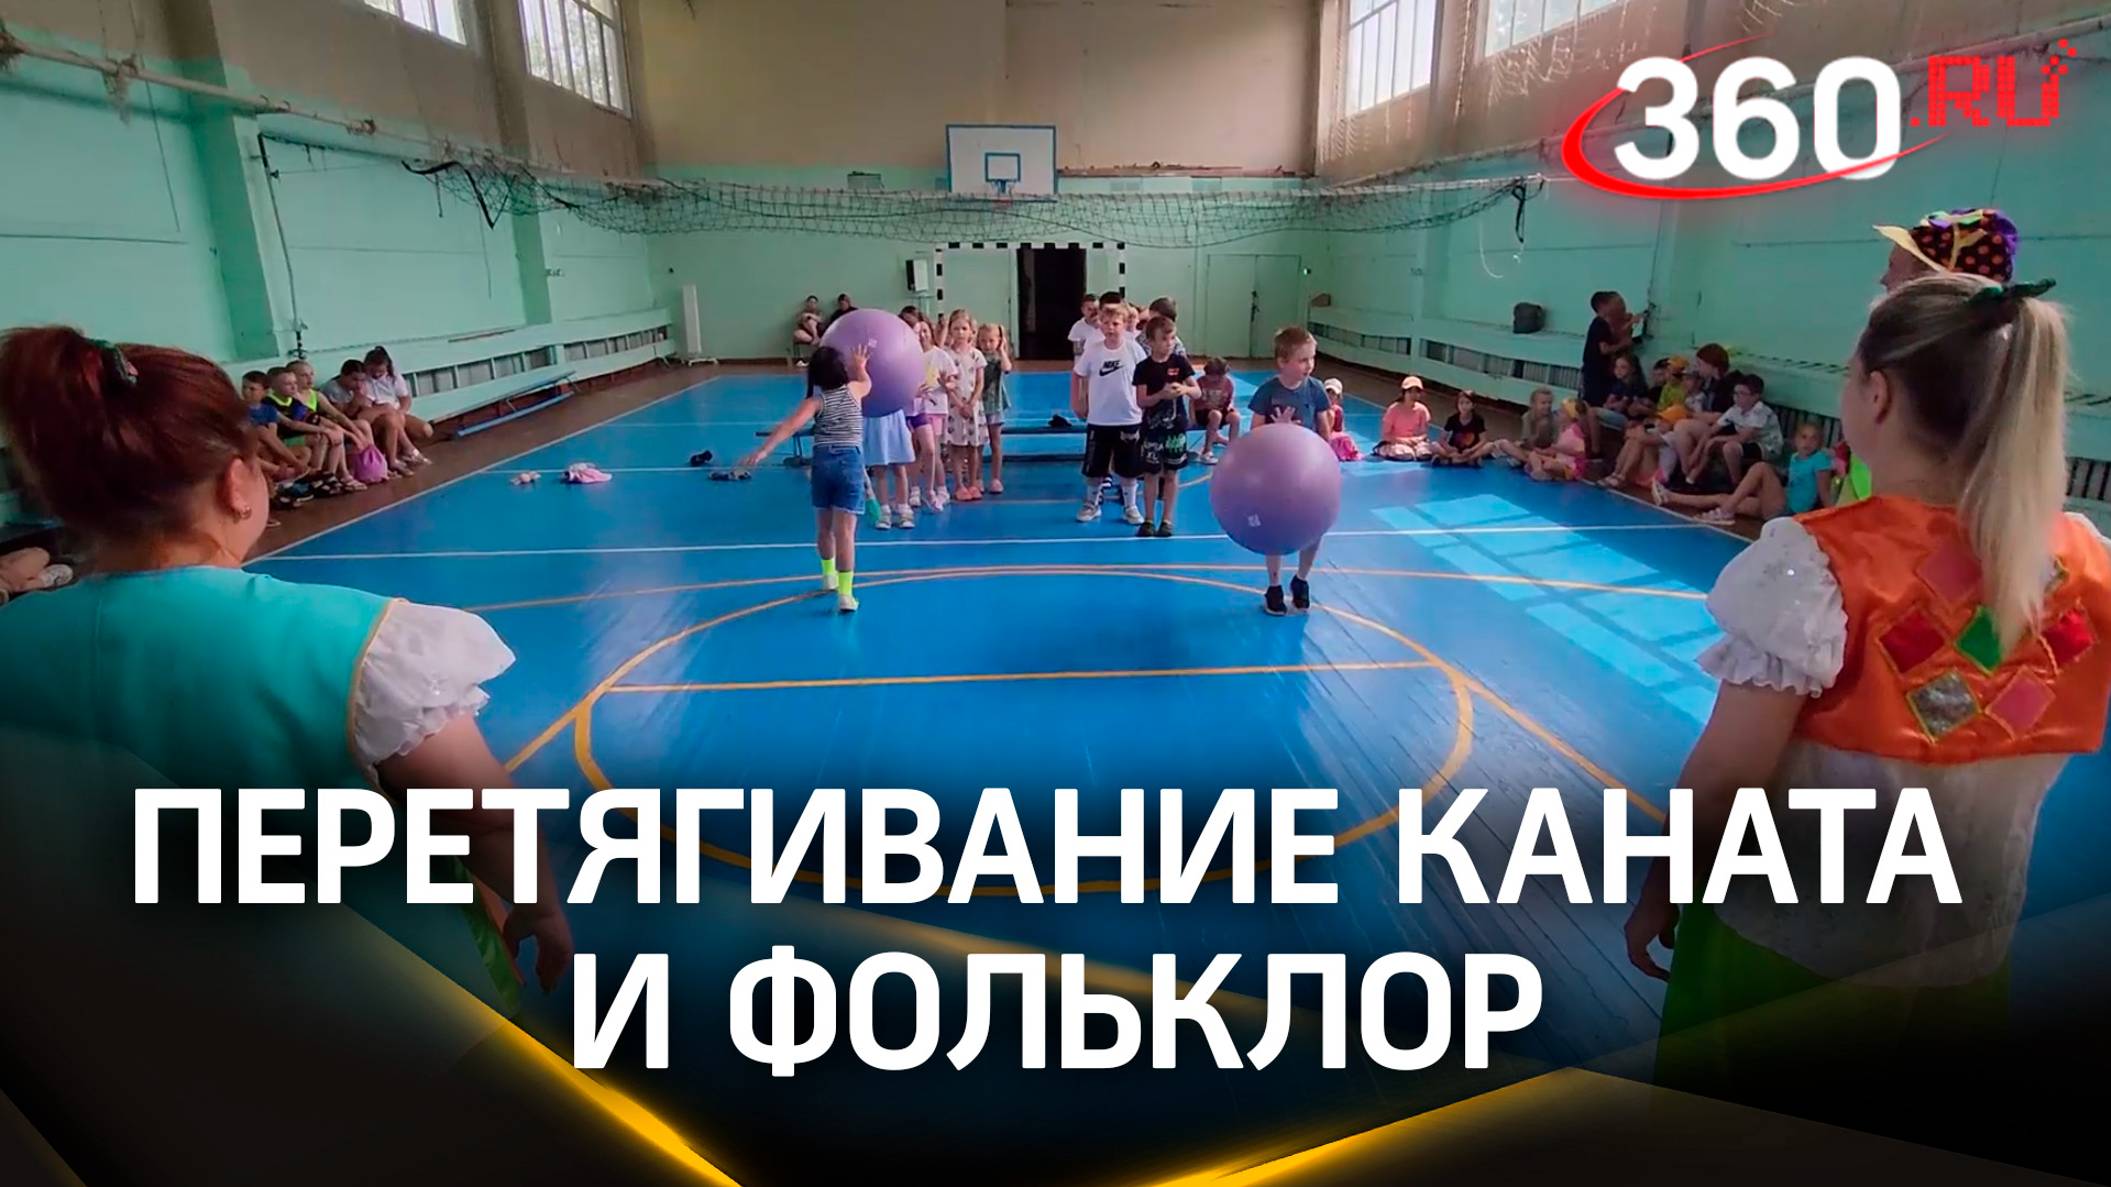 Перетягивание каната и фольклор: как проходит летняя программа в пришкольных лагерях Егорьевска